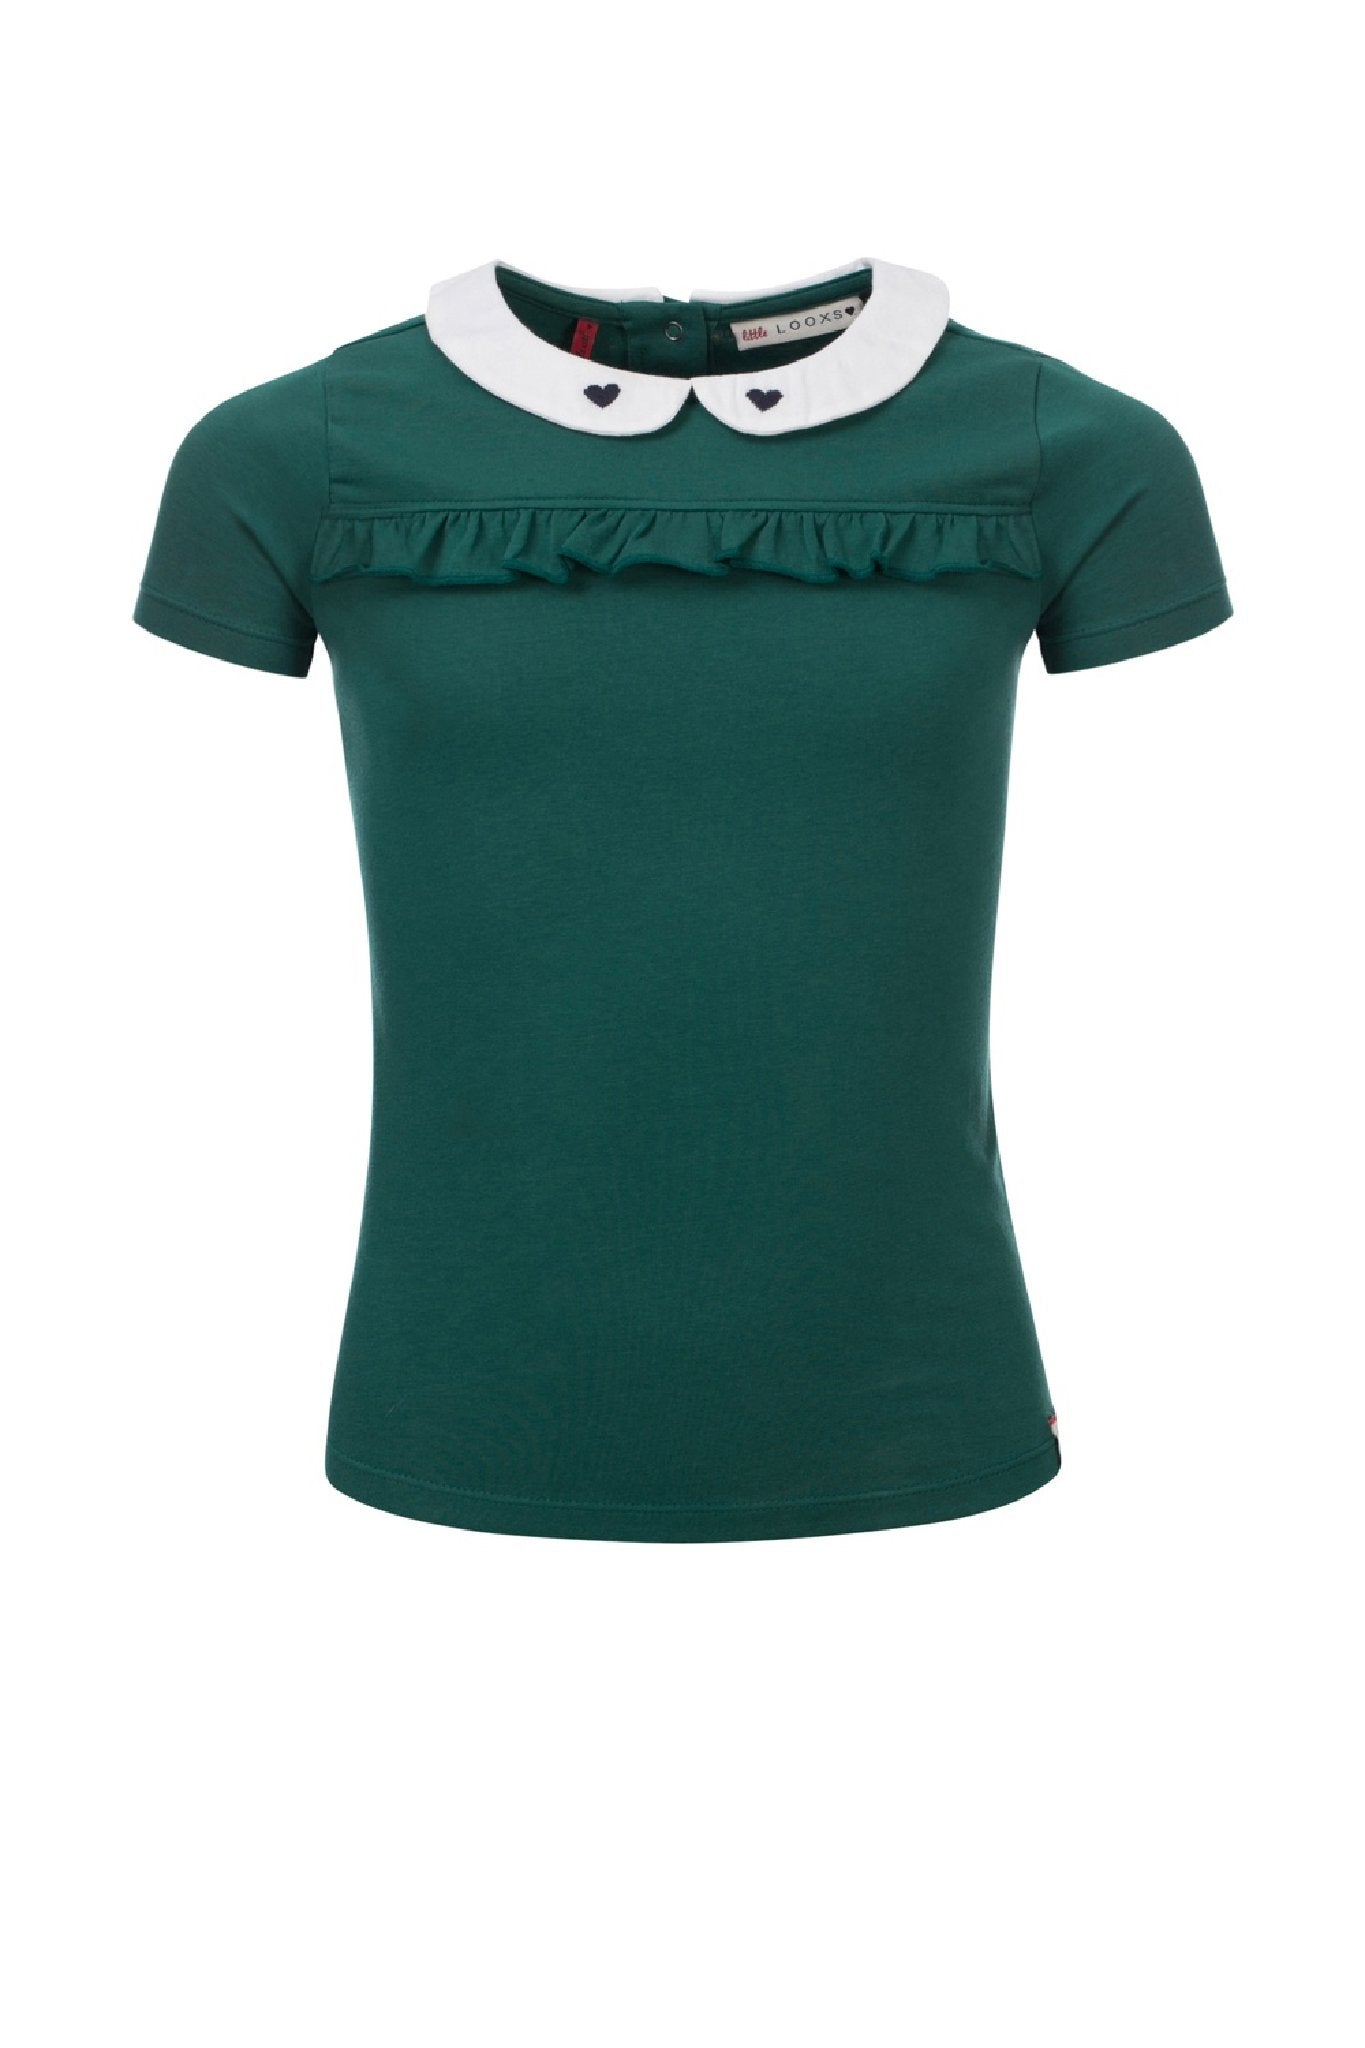 Meisjes Little collar t-shirt s.s van LOOXS Little in de kleur Palm in maat 128.